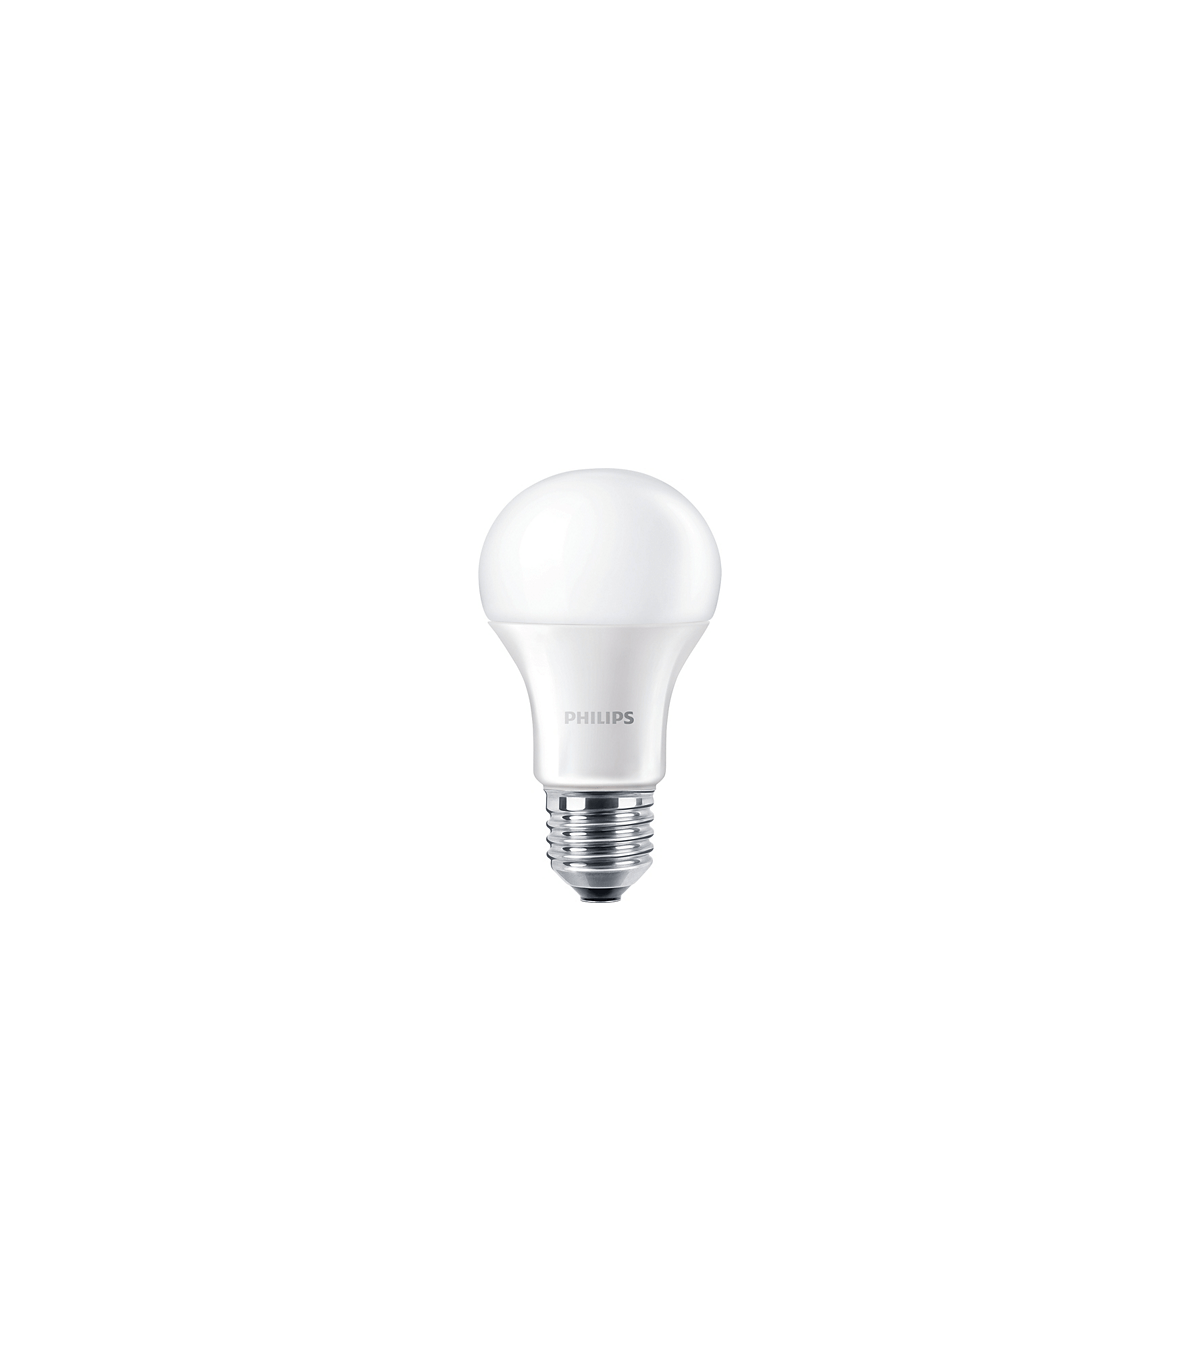 Ampoule LED SMD, standard A60, 9W / 820lm, culot E27, 4000K